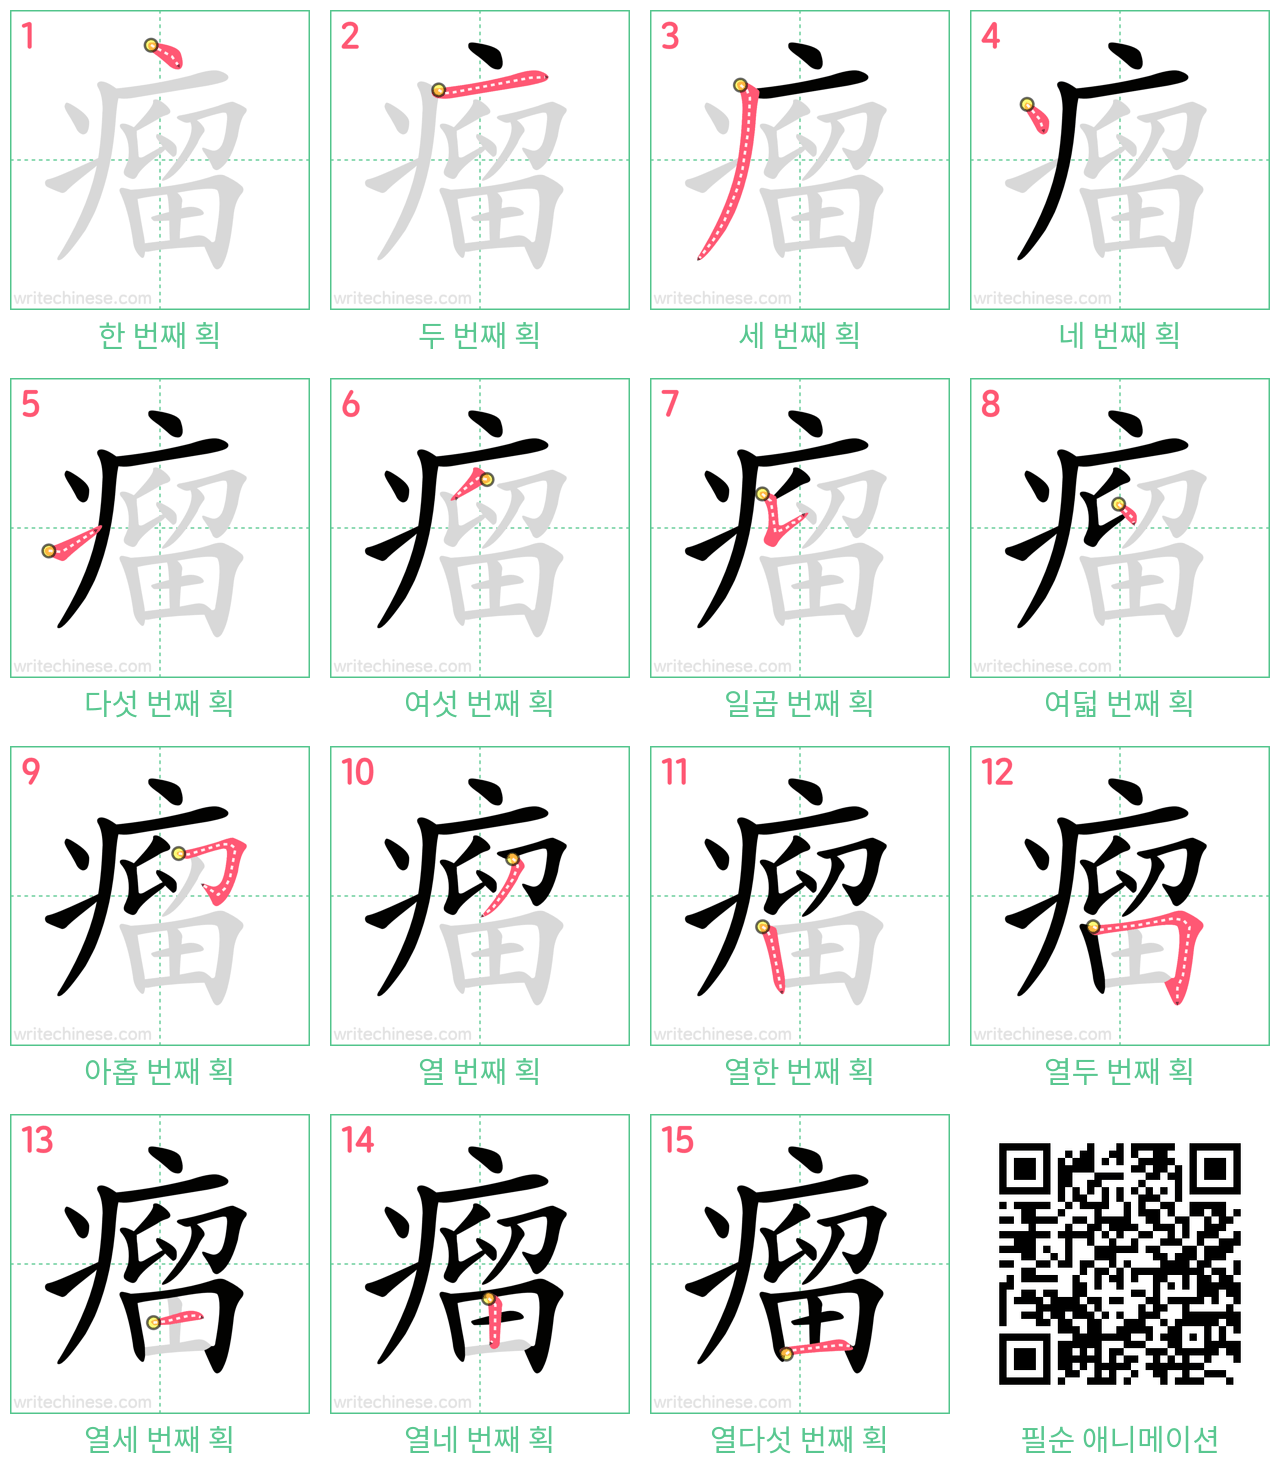 瘤 step-by-step stroke order diagrams